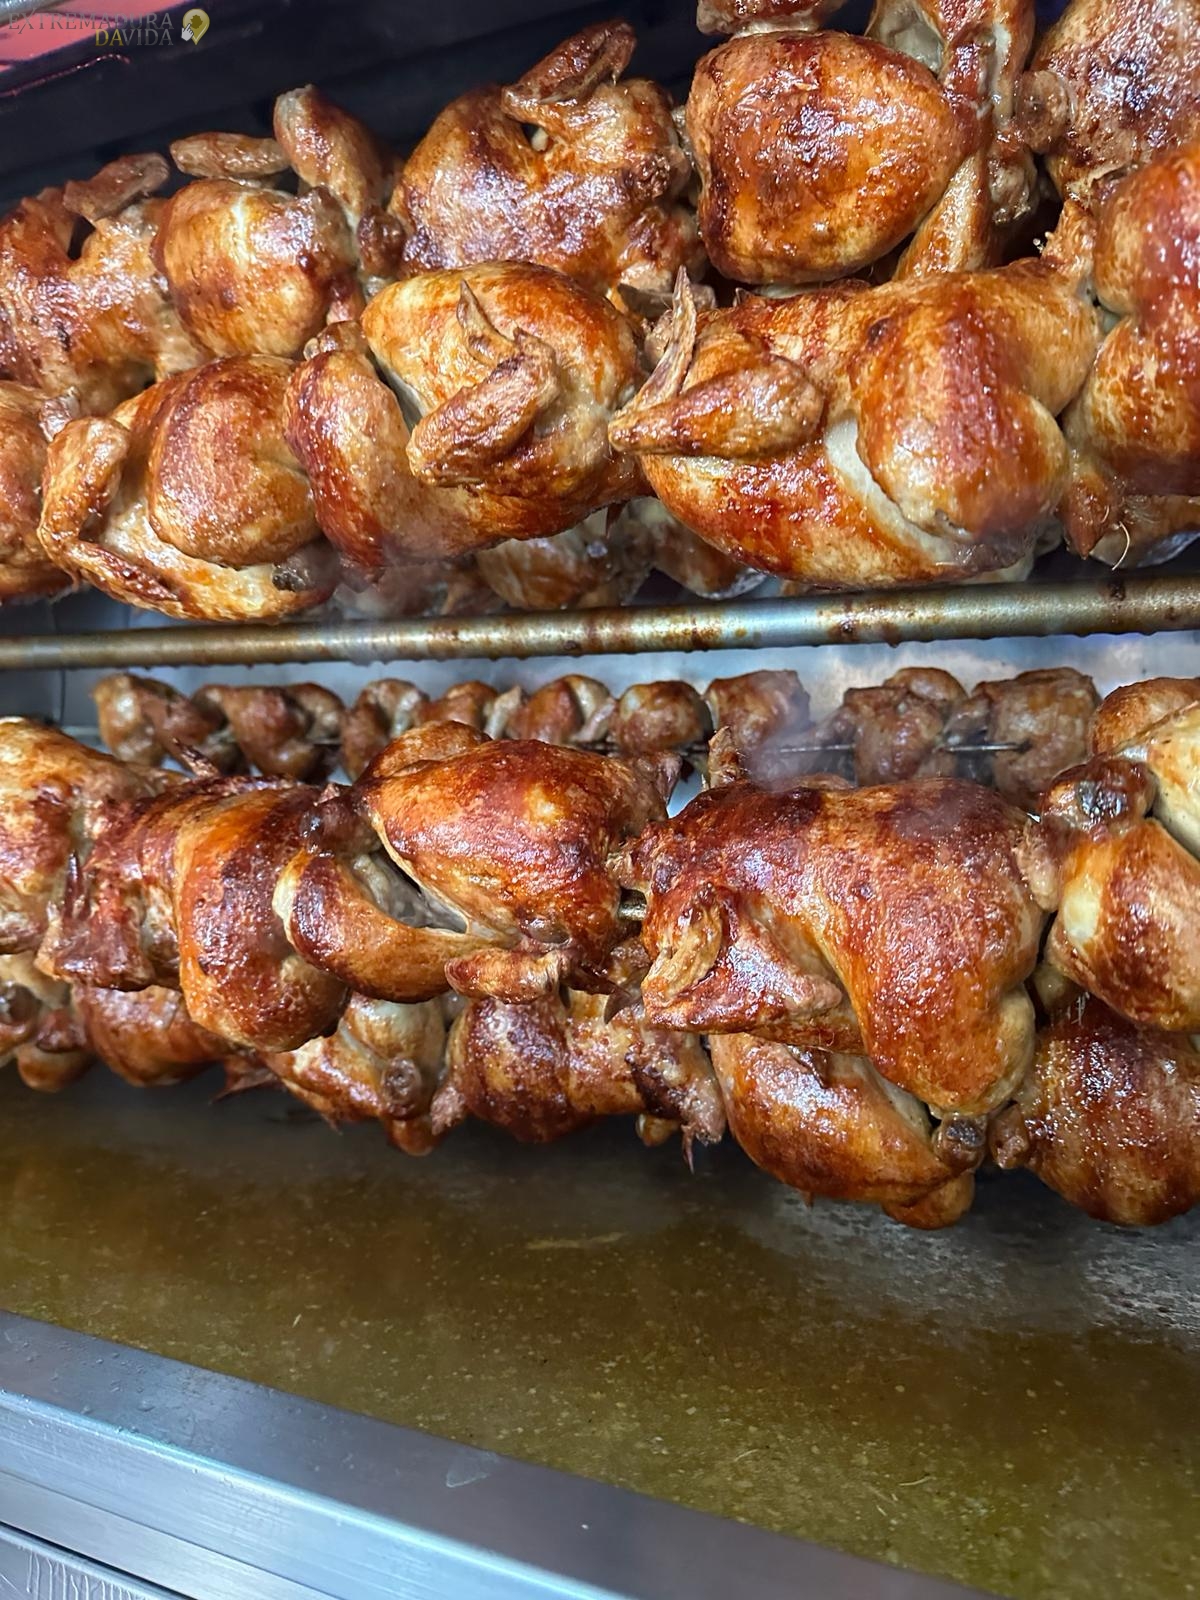 Pollos asados comida preparada en Plasencia El Rey del Pollo